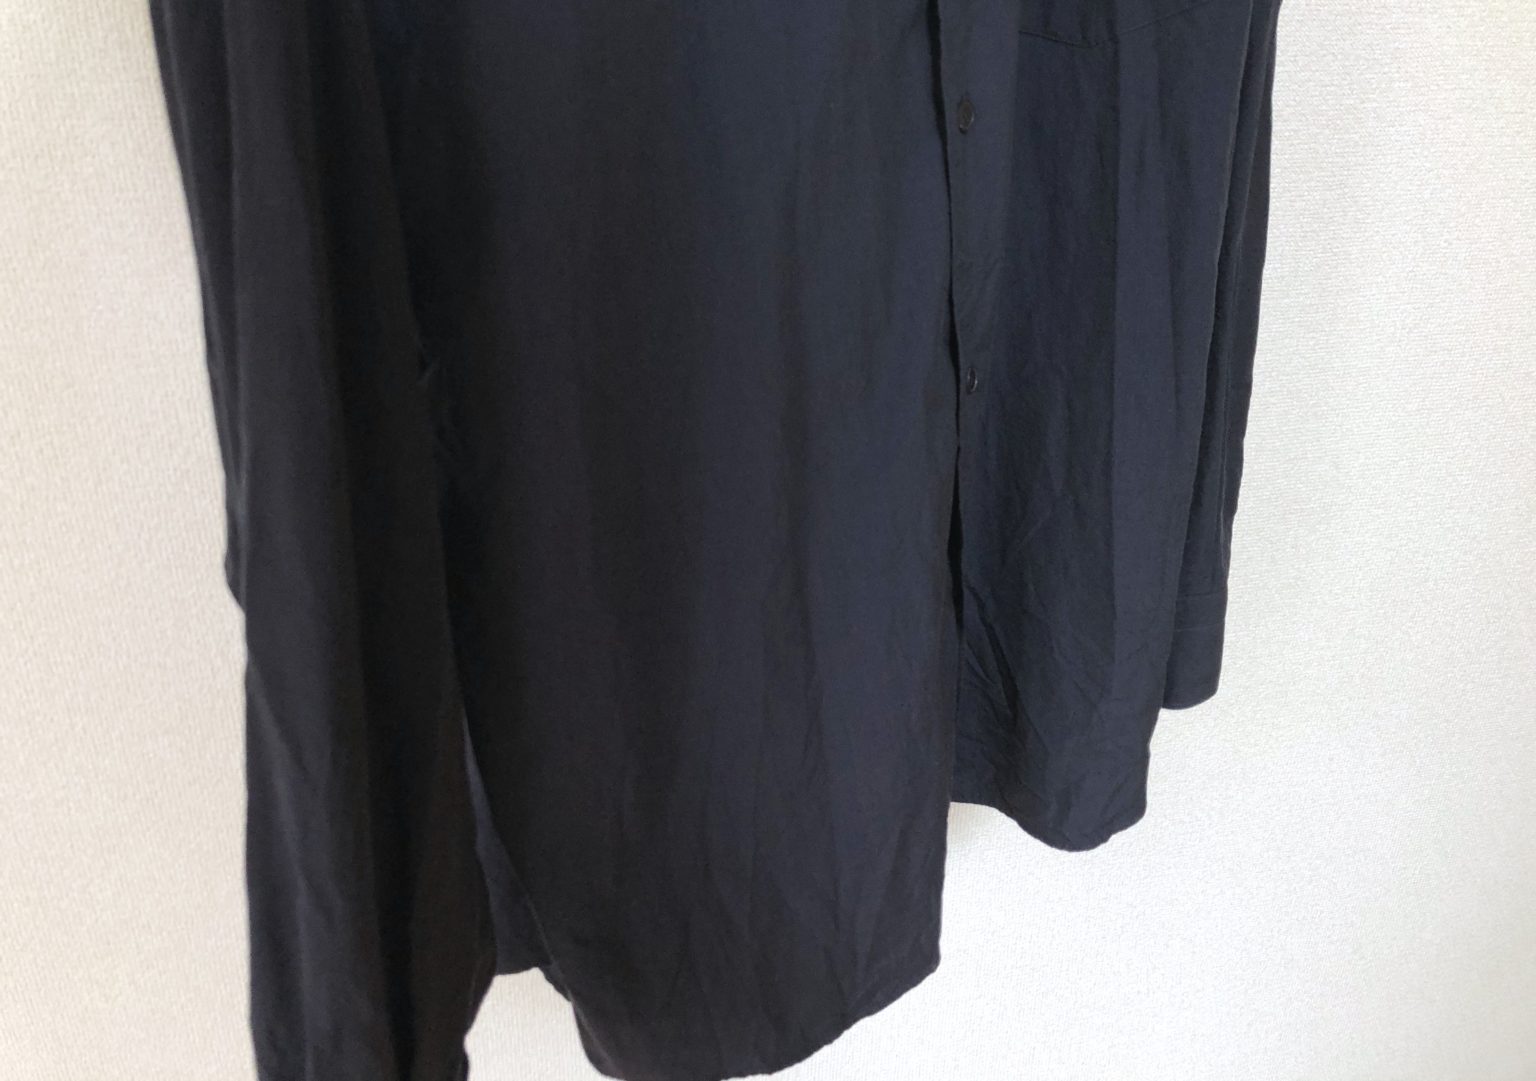 【絶妙】COMOLIの定番・コモリシャツをレビュー【サイズ感やデメリットも解説】｜One Style depot.